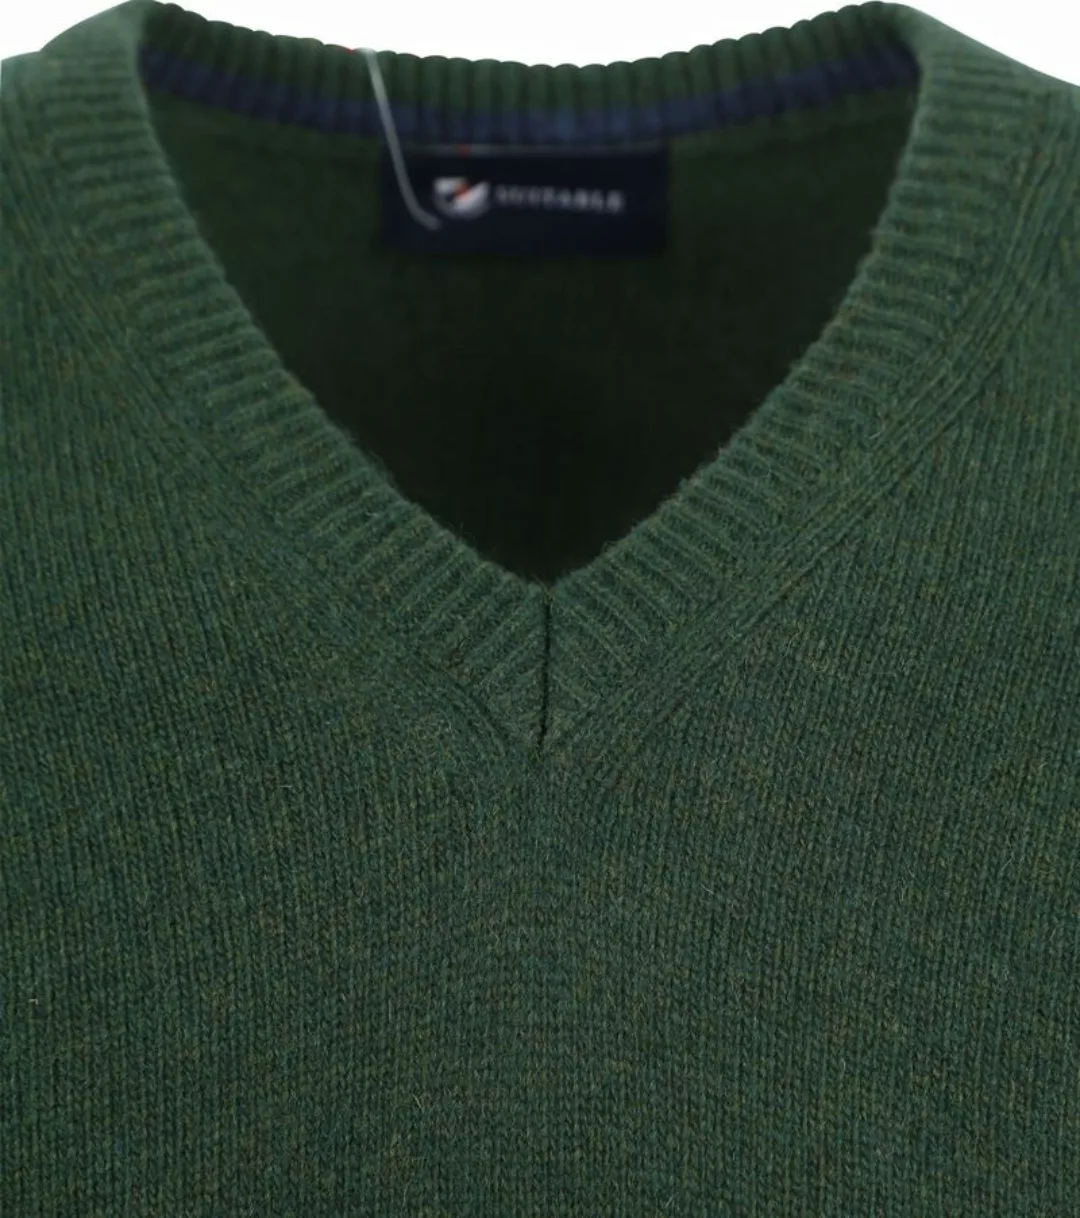 Suitable Lammwolle Pullover V-Ausschnitt Dunkelgrün - Größe L günstig online kaufen